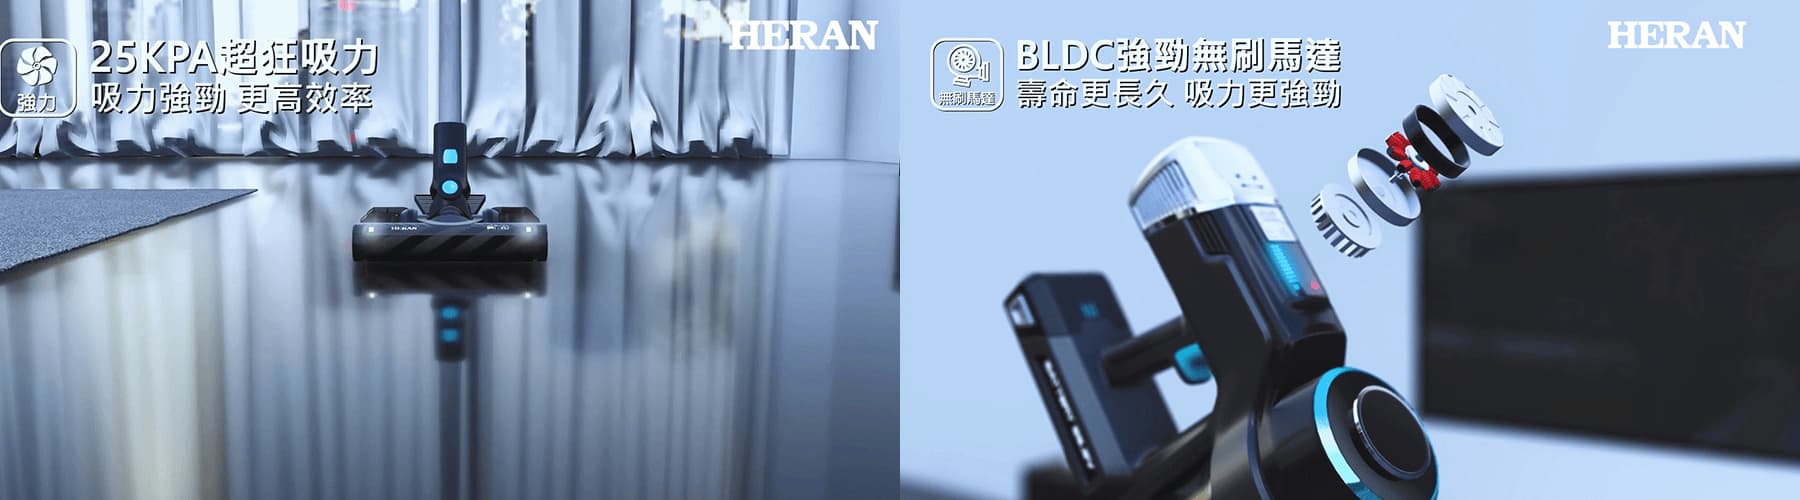 HERAN智慧無線吸塵器3D動畫影片-4